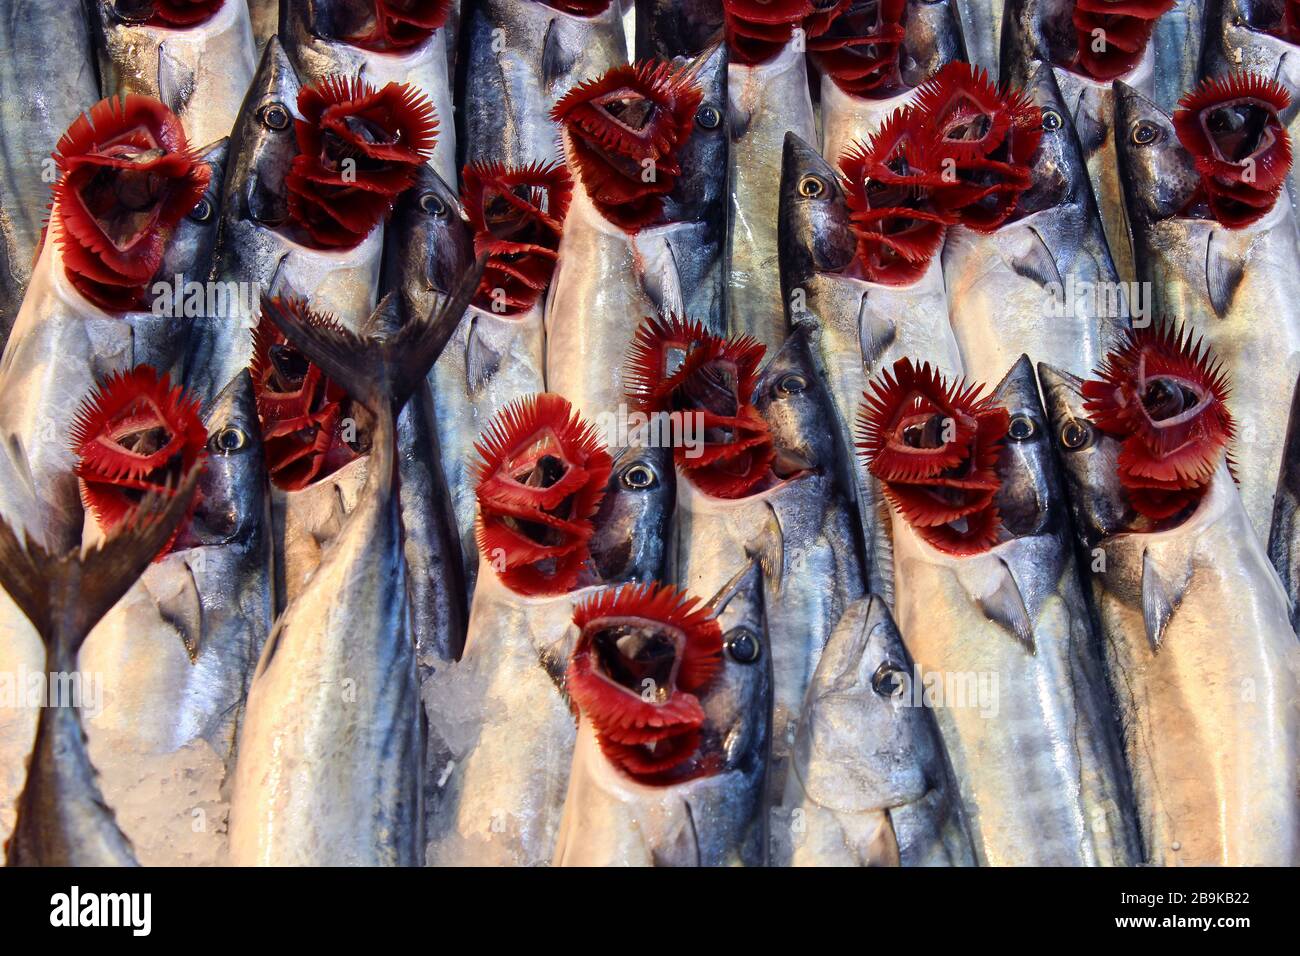 pesci bonito freschi con branchie rosse nel mercato del pesce Foto Stock